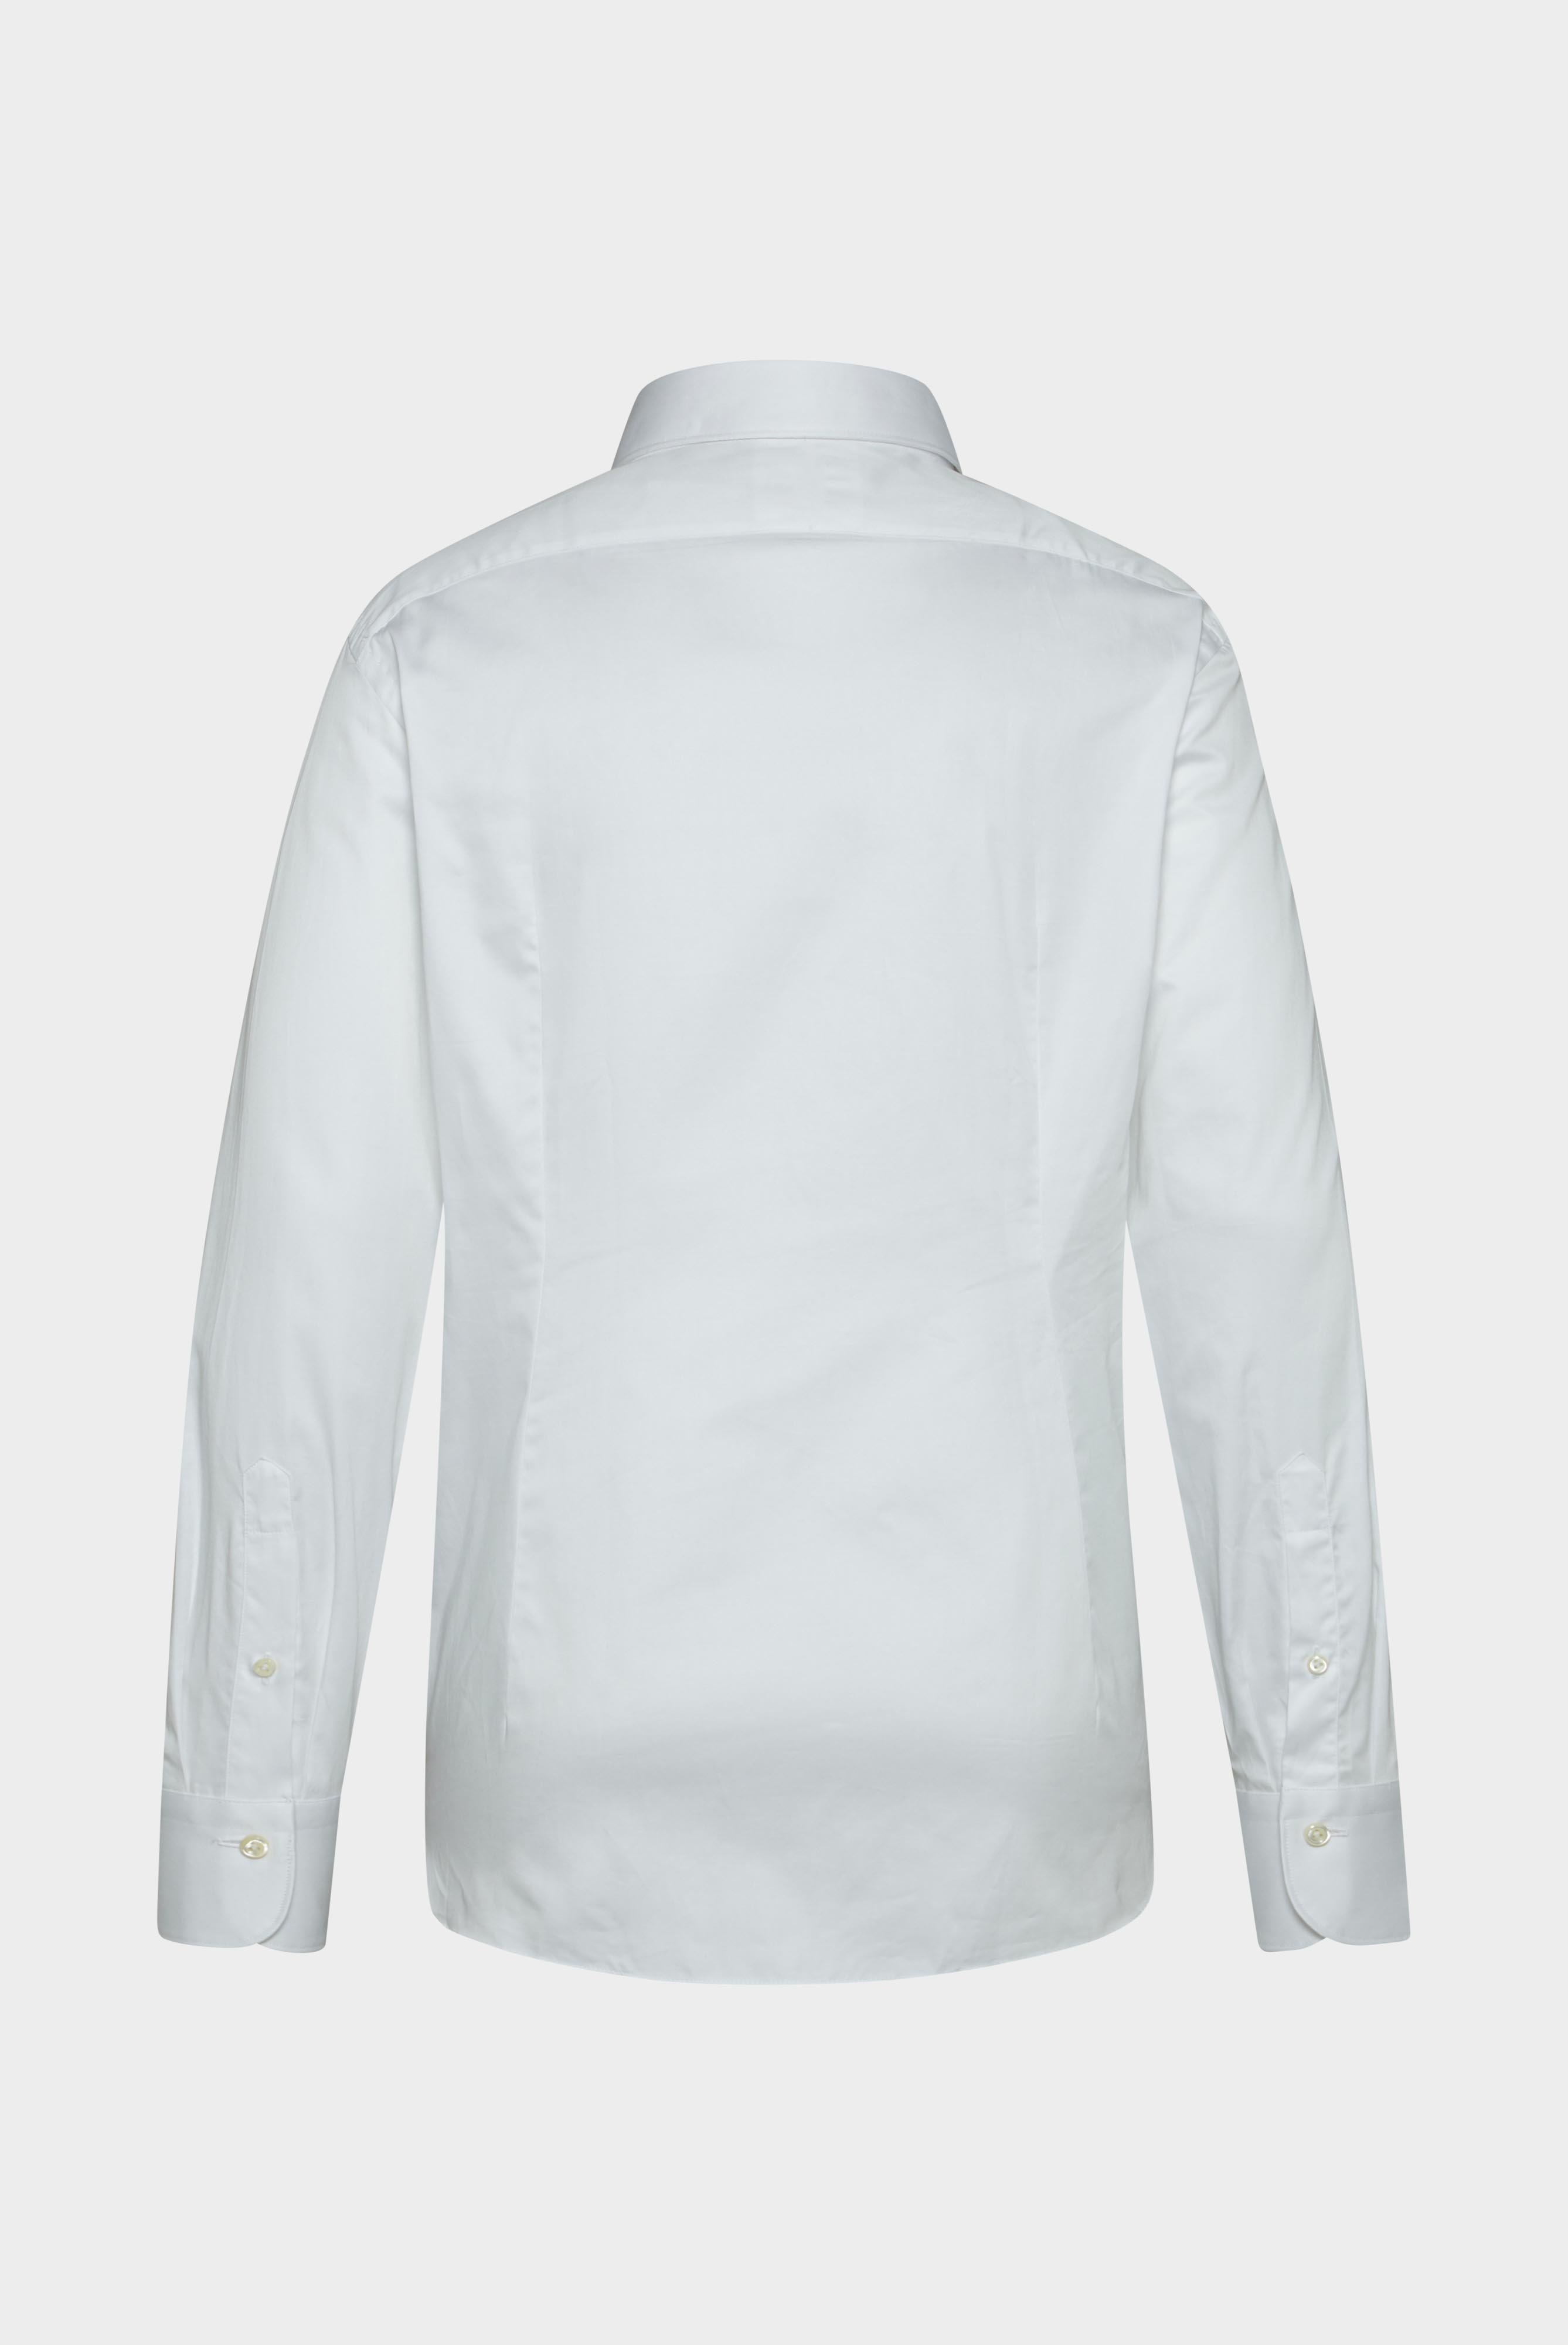 Meisterwerk Shirts+Structured Cotton Shirt+20.2502.NV.130972.000.43